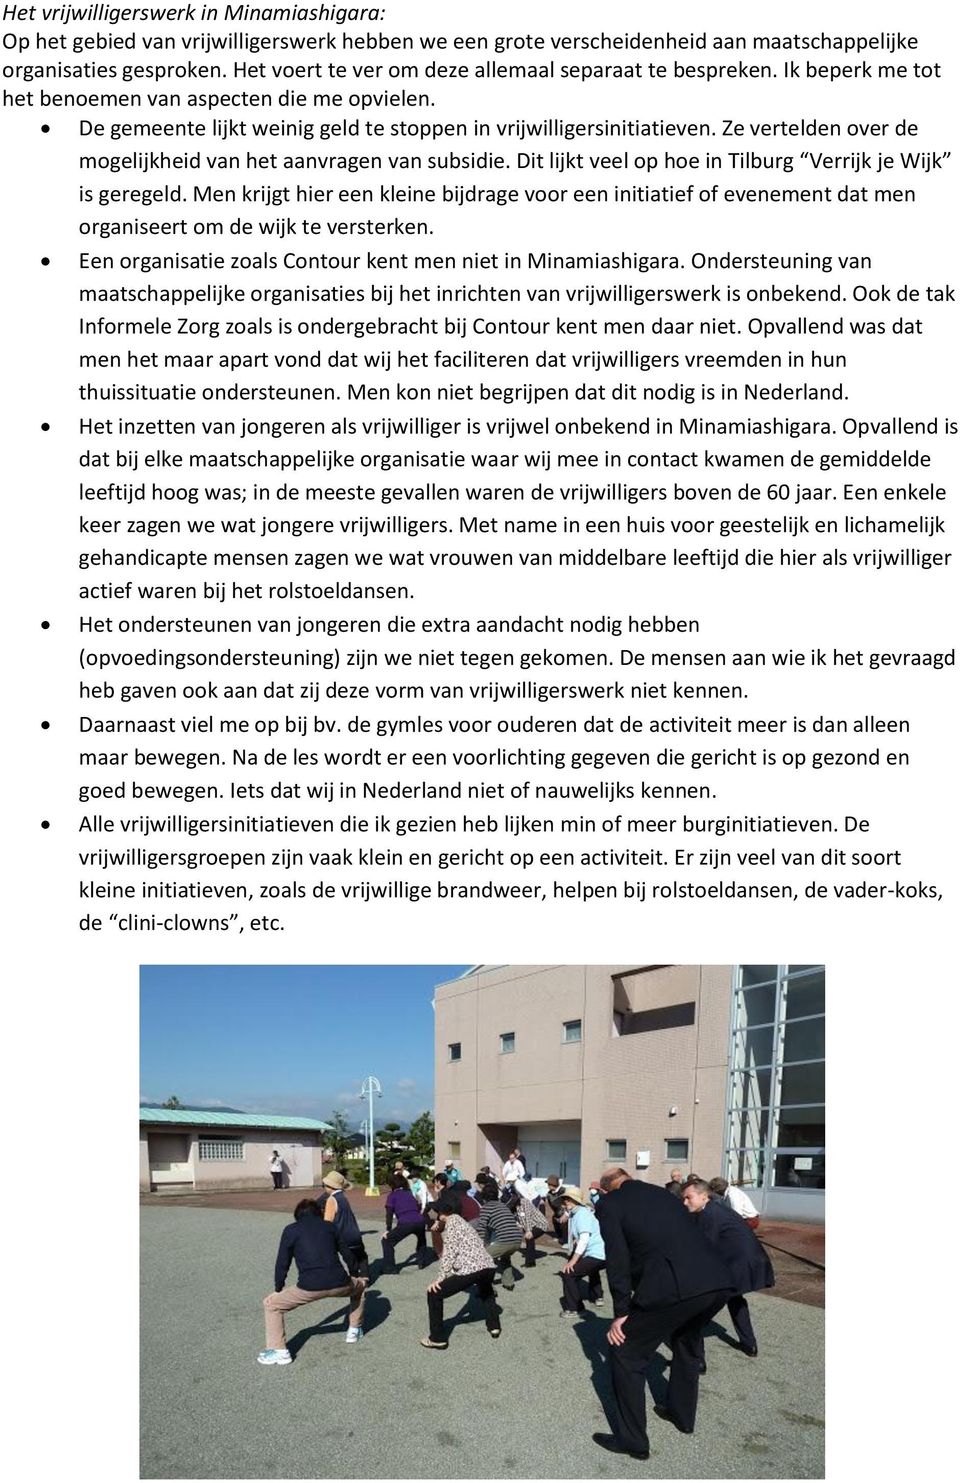 Ze vertelden over de mogelijkheid van het aanvragen van subsidie. Dit lijkt veel op hoe in Tilburg Verrijk je Wijk is geregeld.